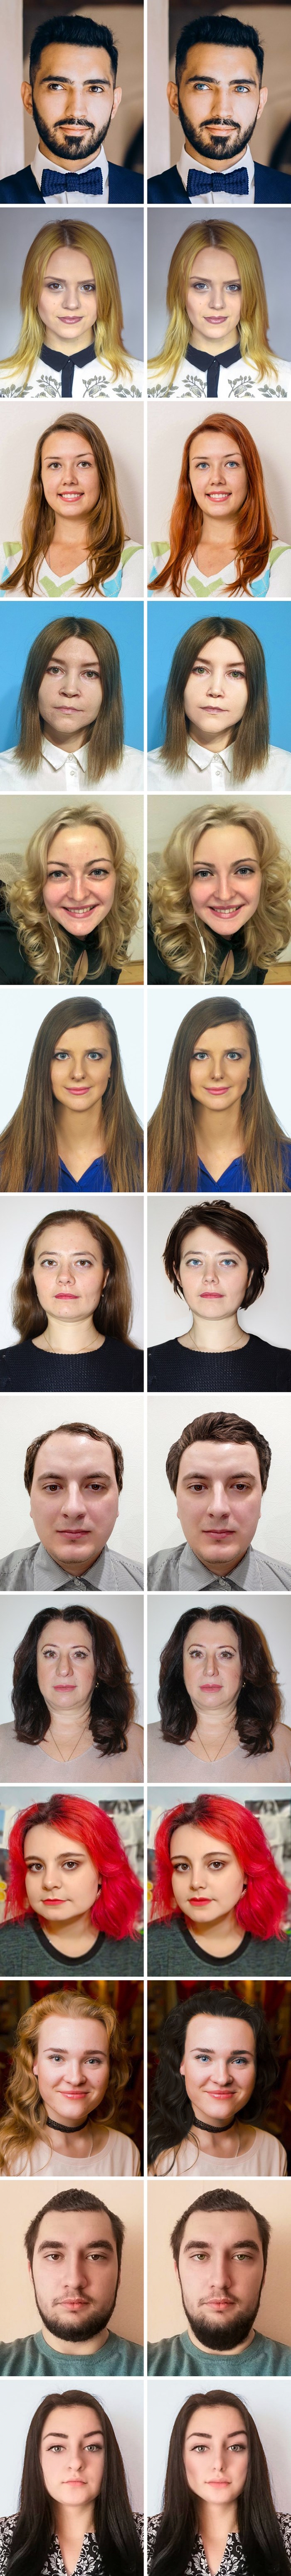 Pitali su ljude što bi promijenili na svom izgledu pa im pokazali rezultat fotošopiranja. Jesu li na slikama zaista zgodniji?